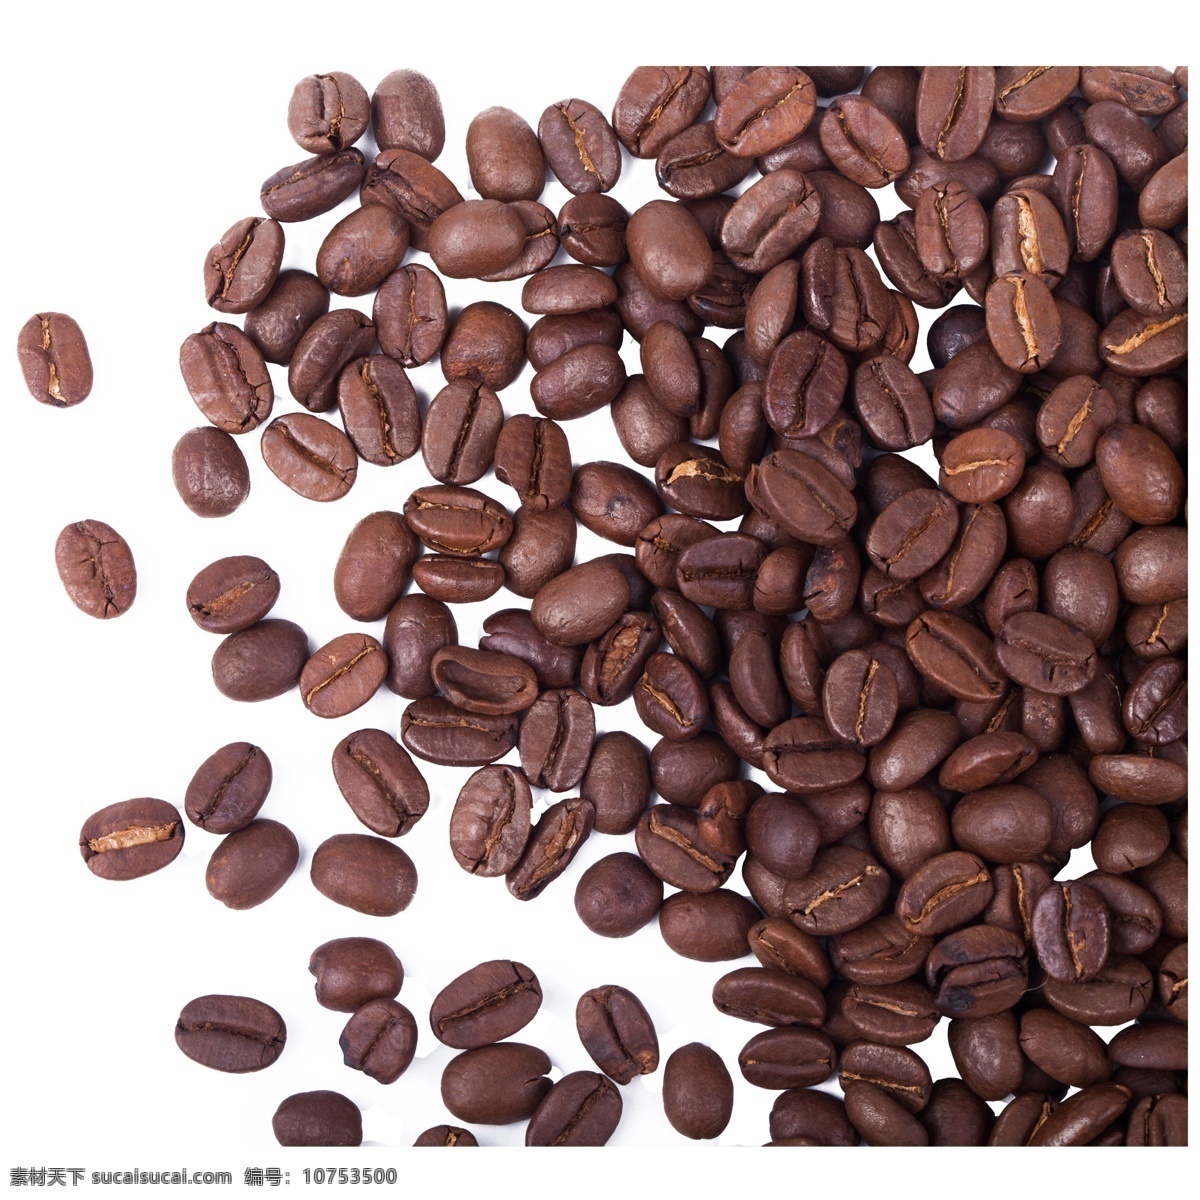 实拍 咖啡 原料 咖啡豆 黑色 种植 五谷 谷物 休闲咖啡豆 实拍咖啡豆 豆子